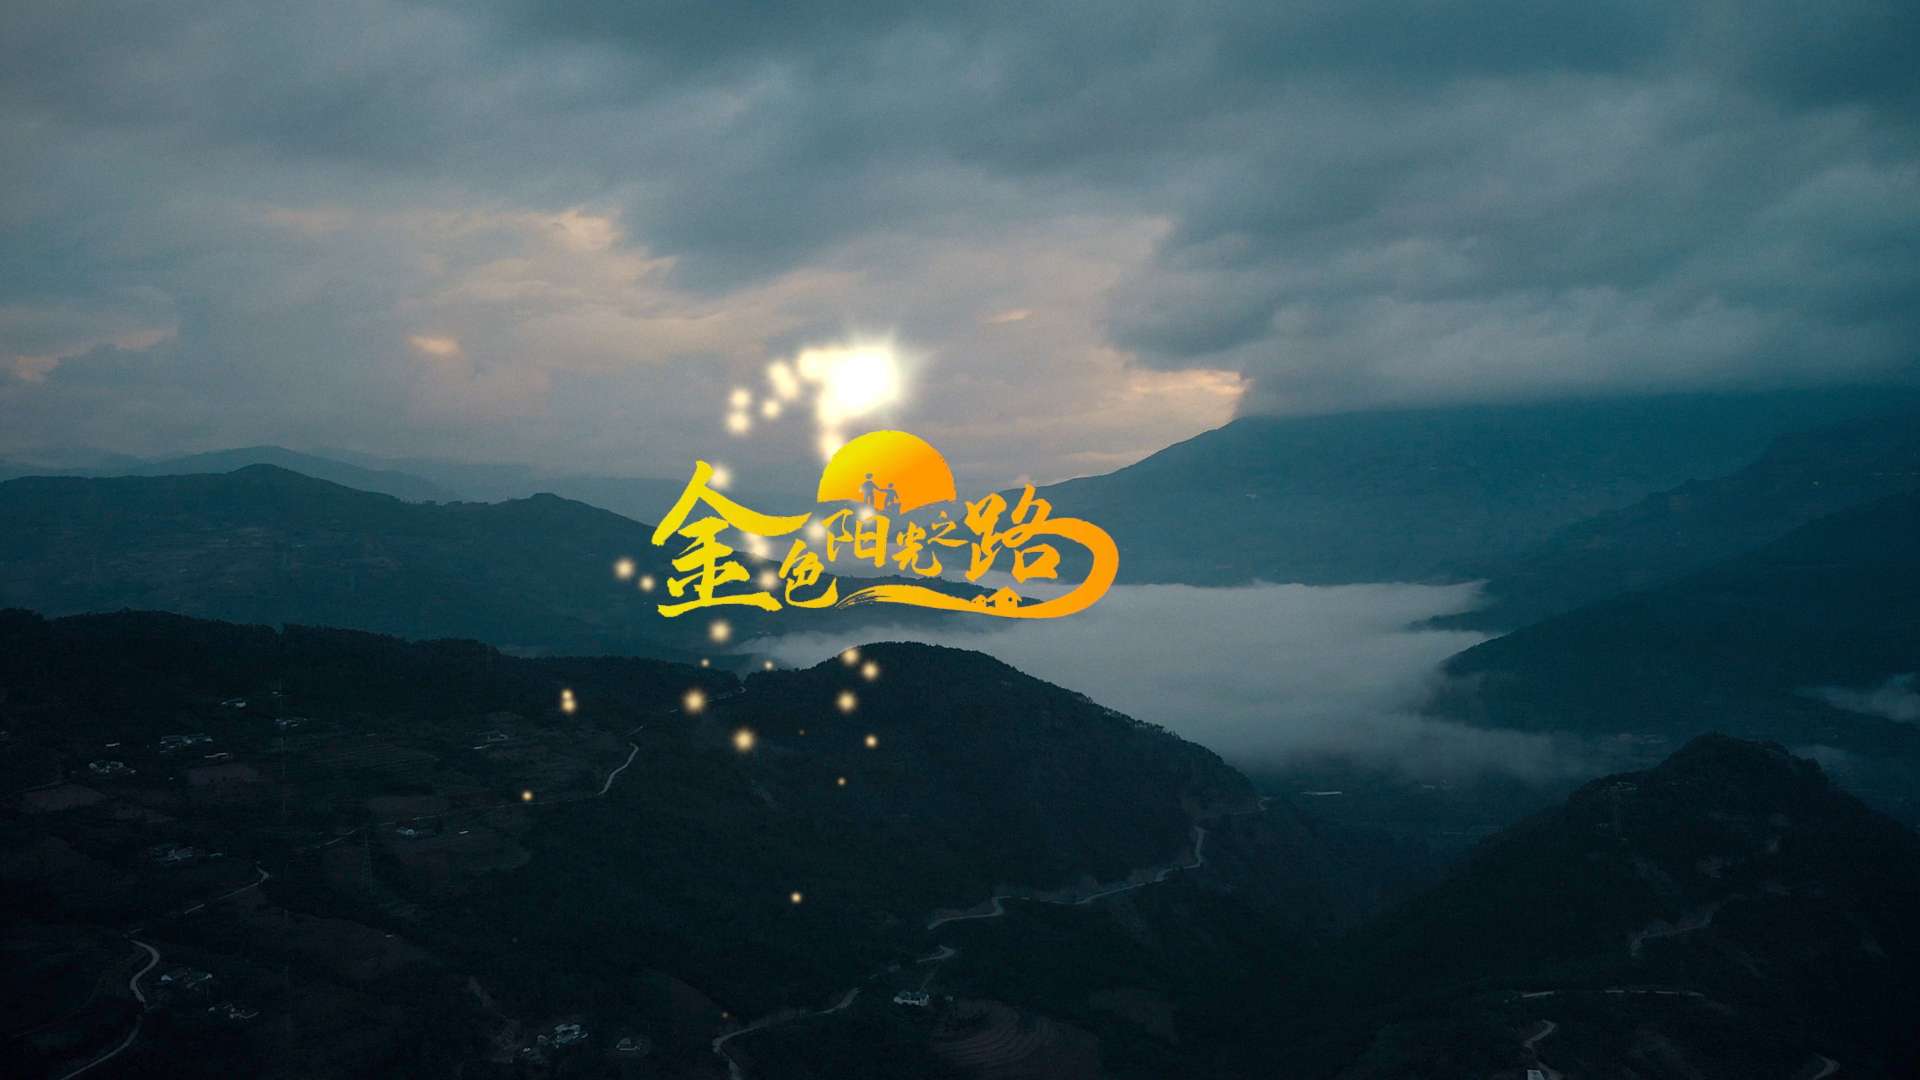 平安租赁 金色阳光之路公益项目纪录宣传片《金色阳光》